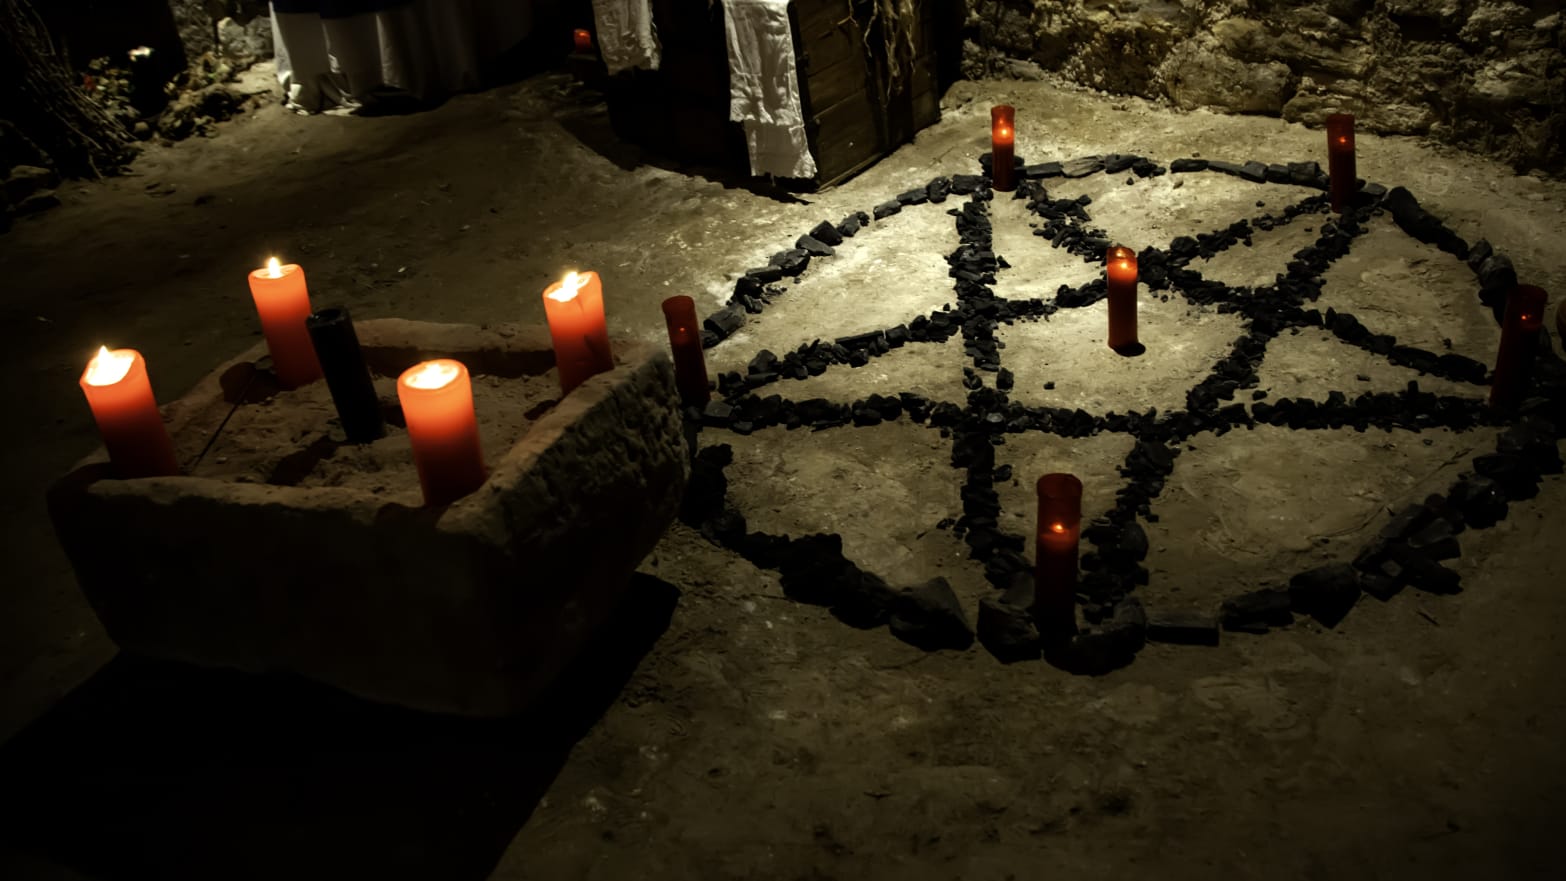 satanic ritual scene